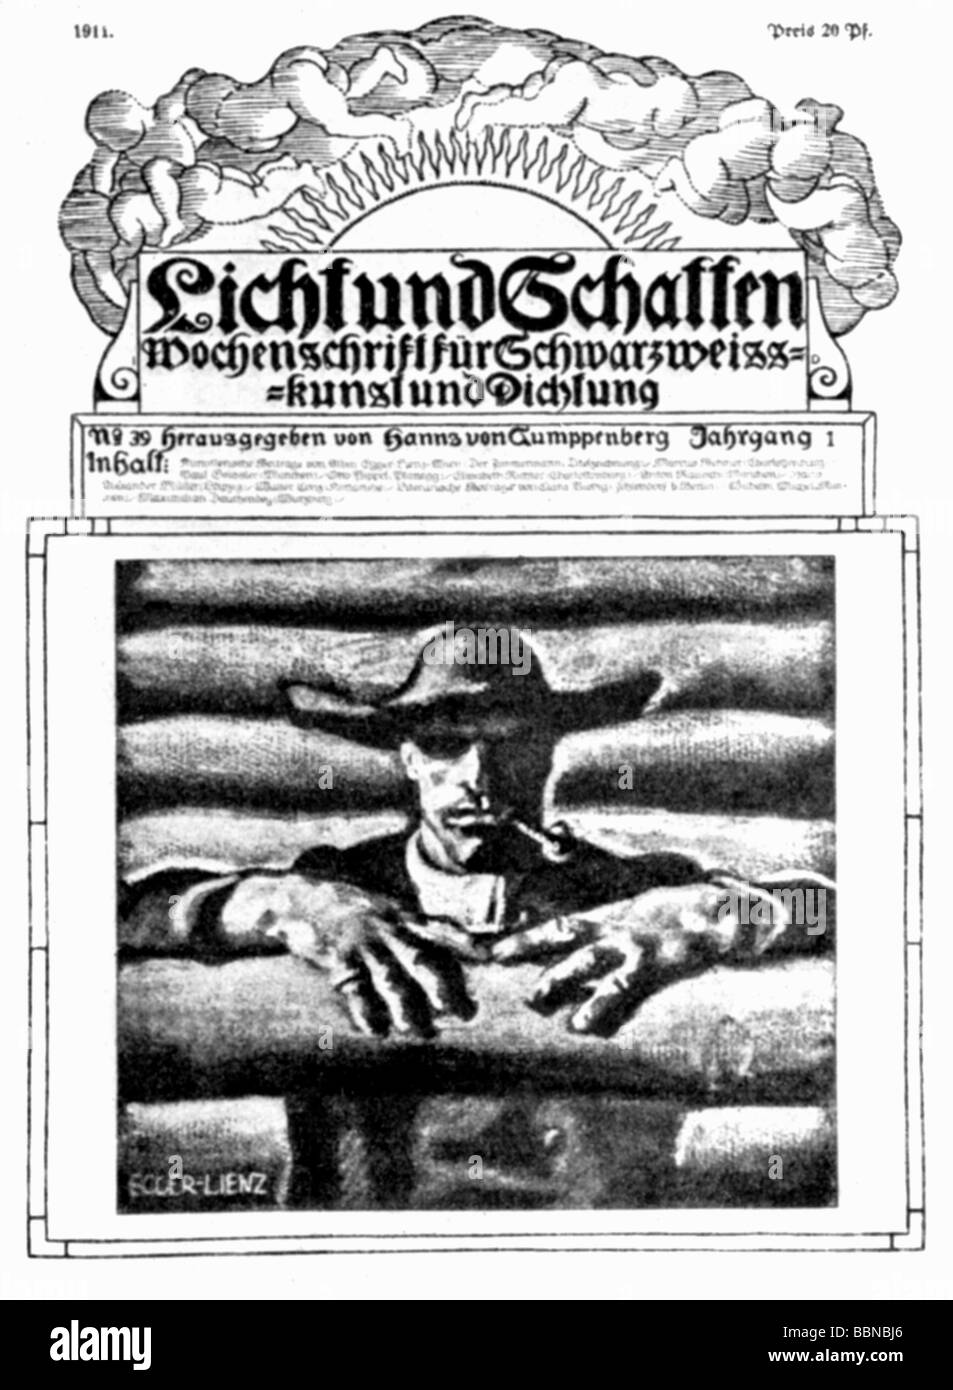 Gumppenberg, Hanns Freiherr von, 4.12.1866 - 29.3.1928, German author / writer, cover of his journal 'Licht und Schatten' (Light and Shade), drawing by A. Egger-Lienz, Stock Photo